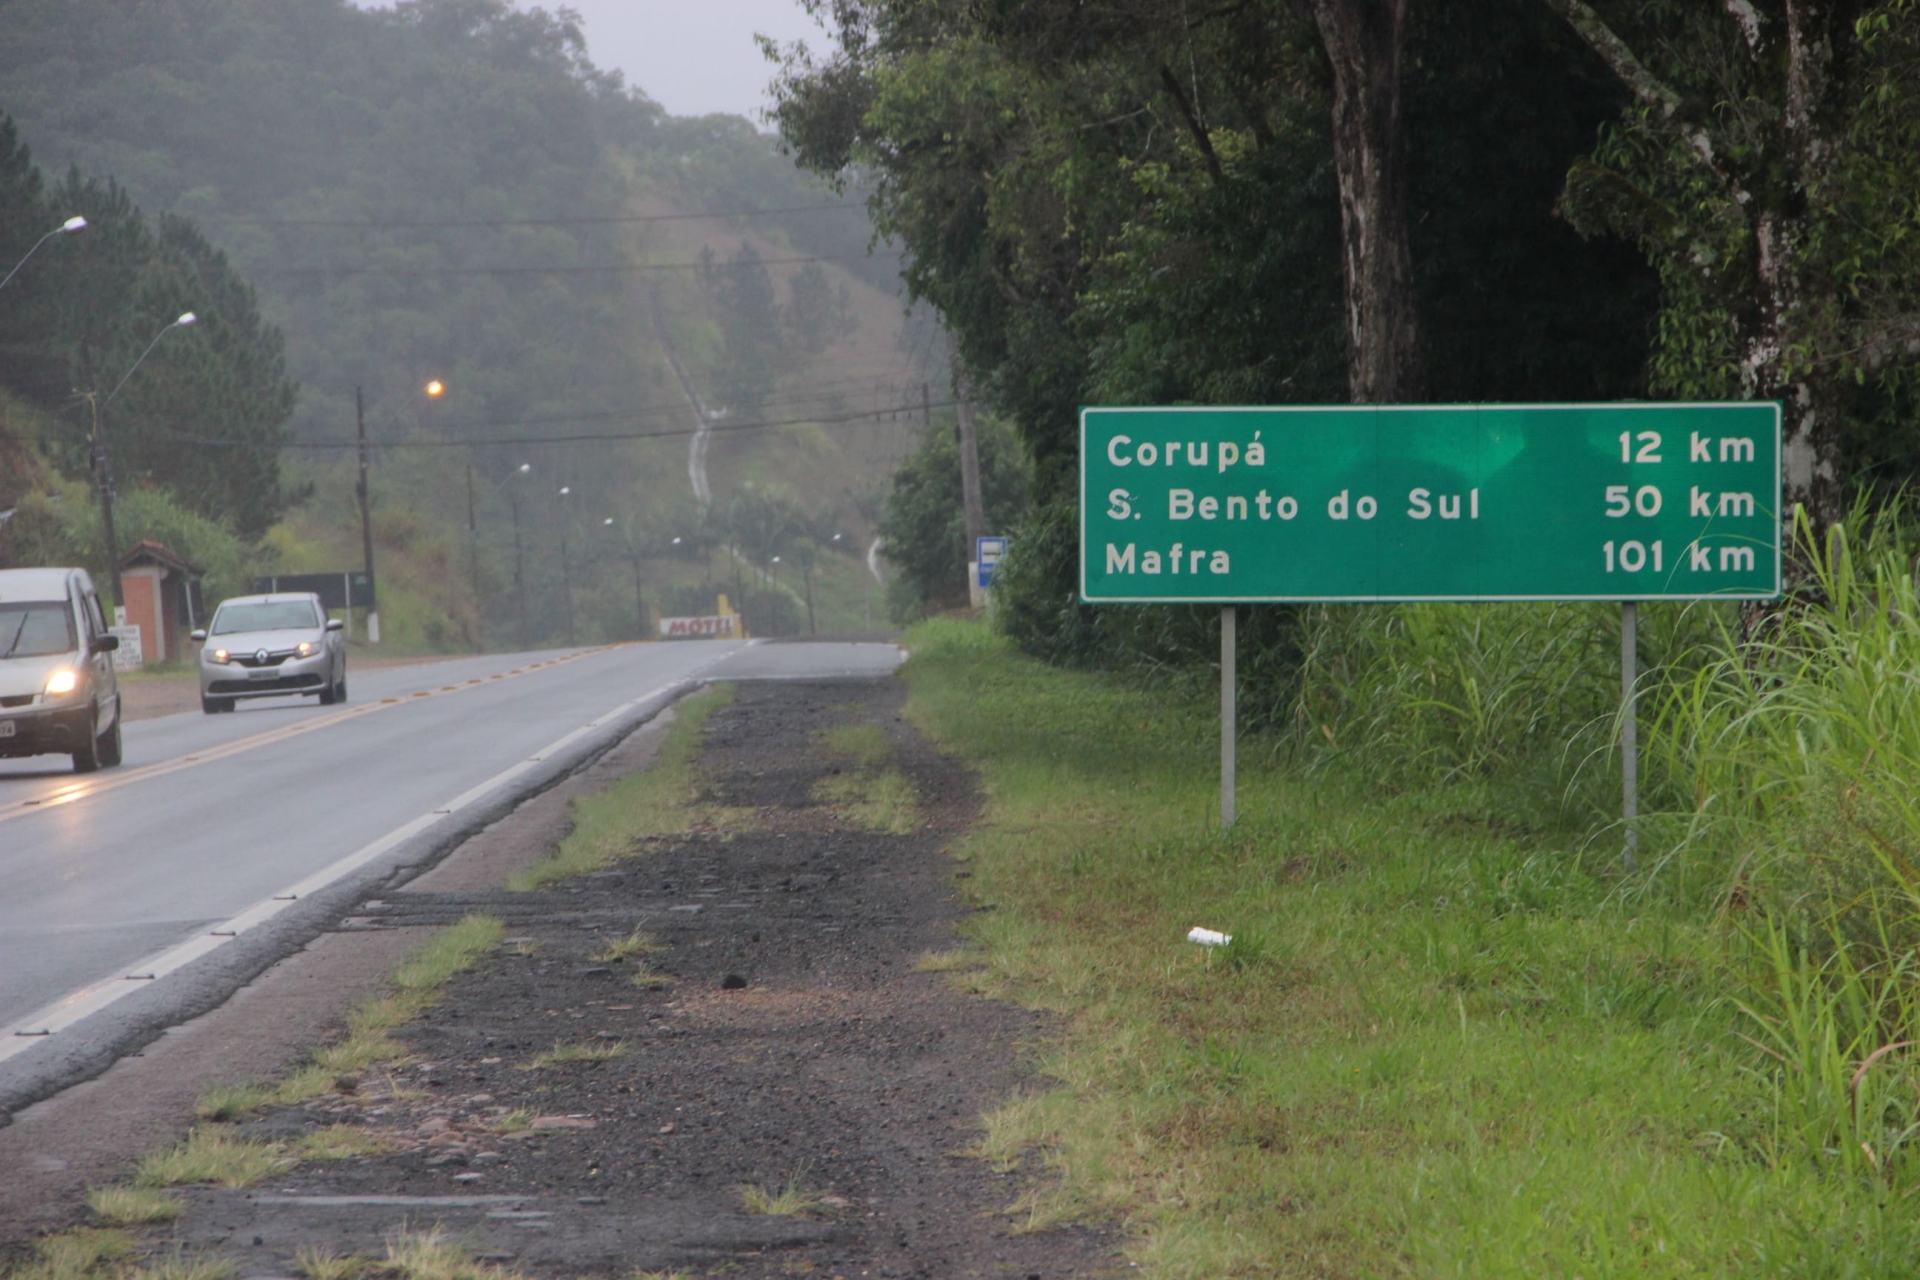 Lideranças de Jaraguá do Sul e Corupá cobram acostamento na BR-280 do DNIT  - JDV